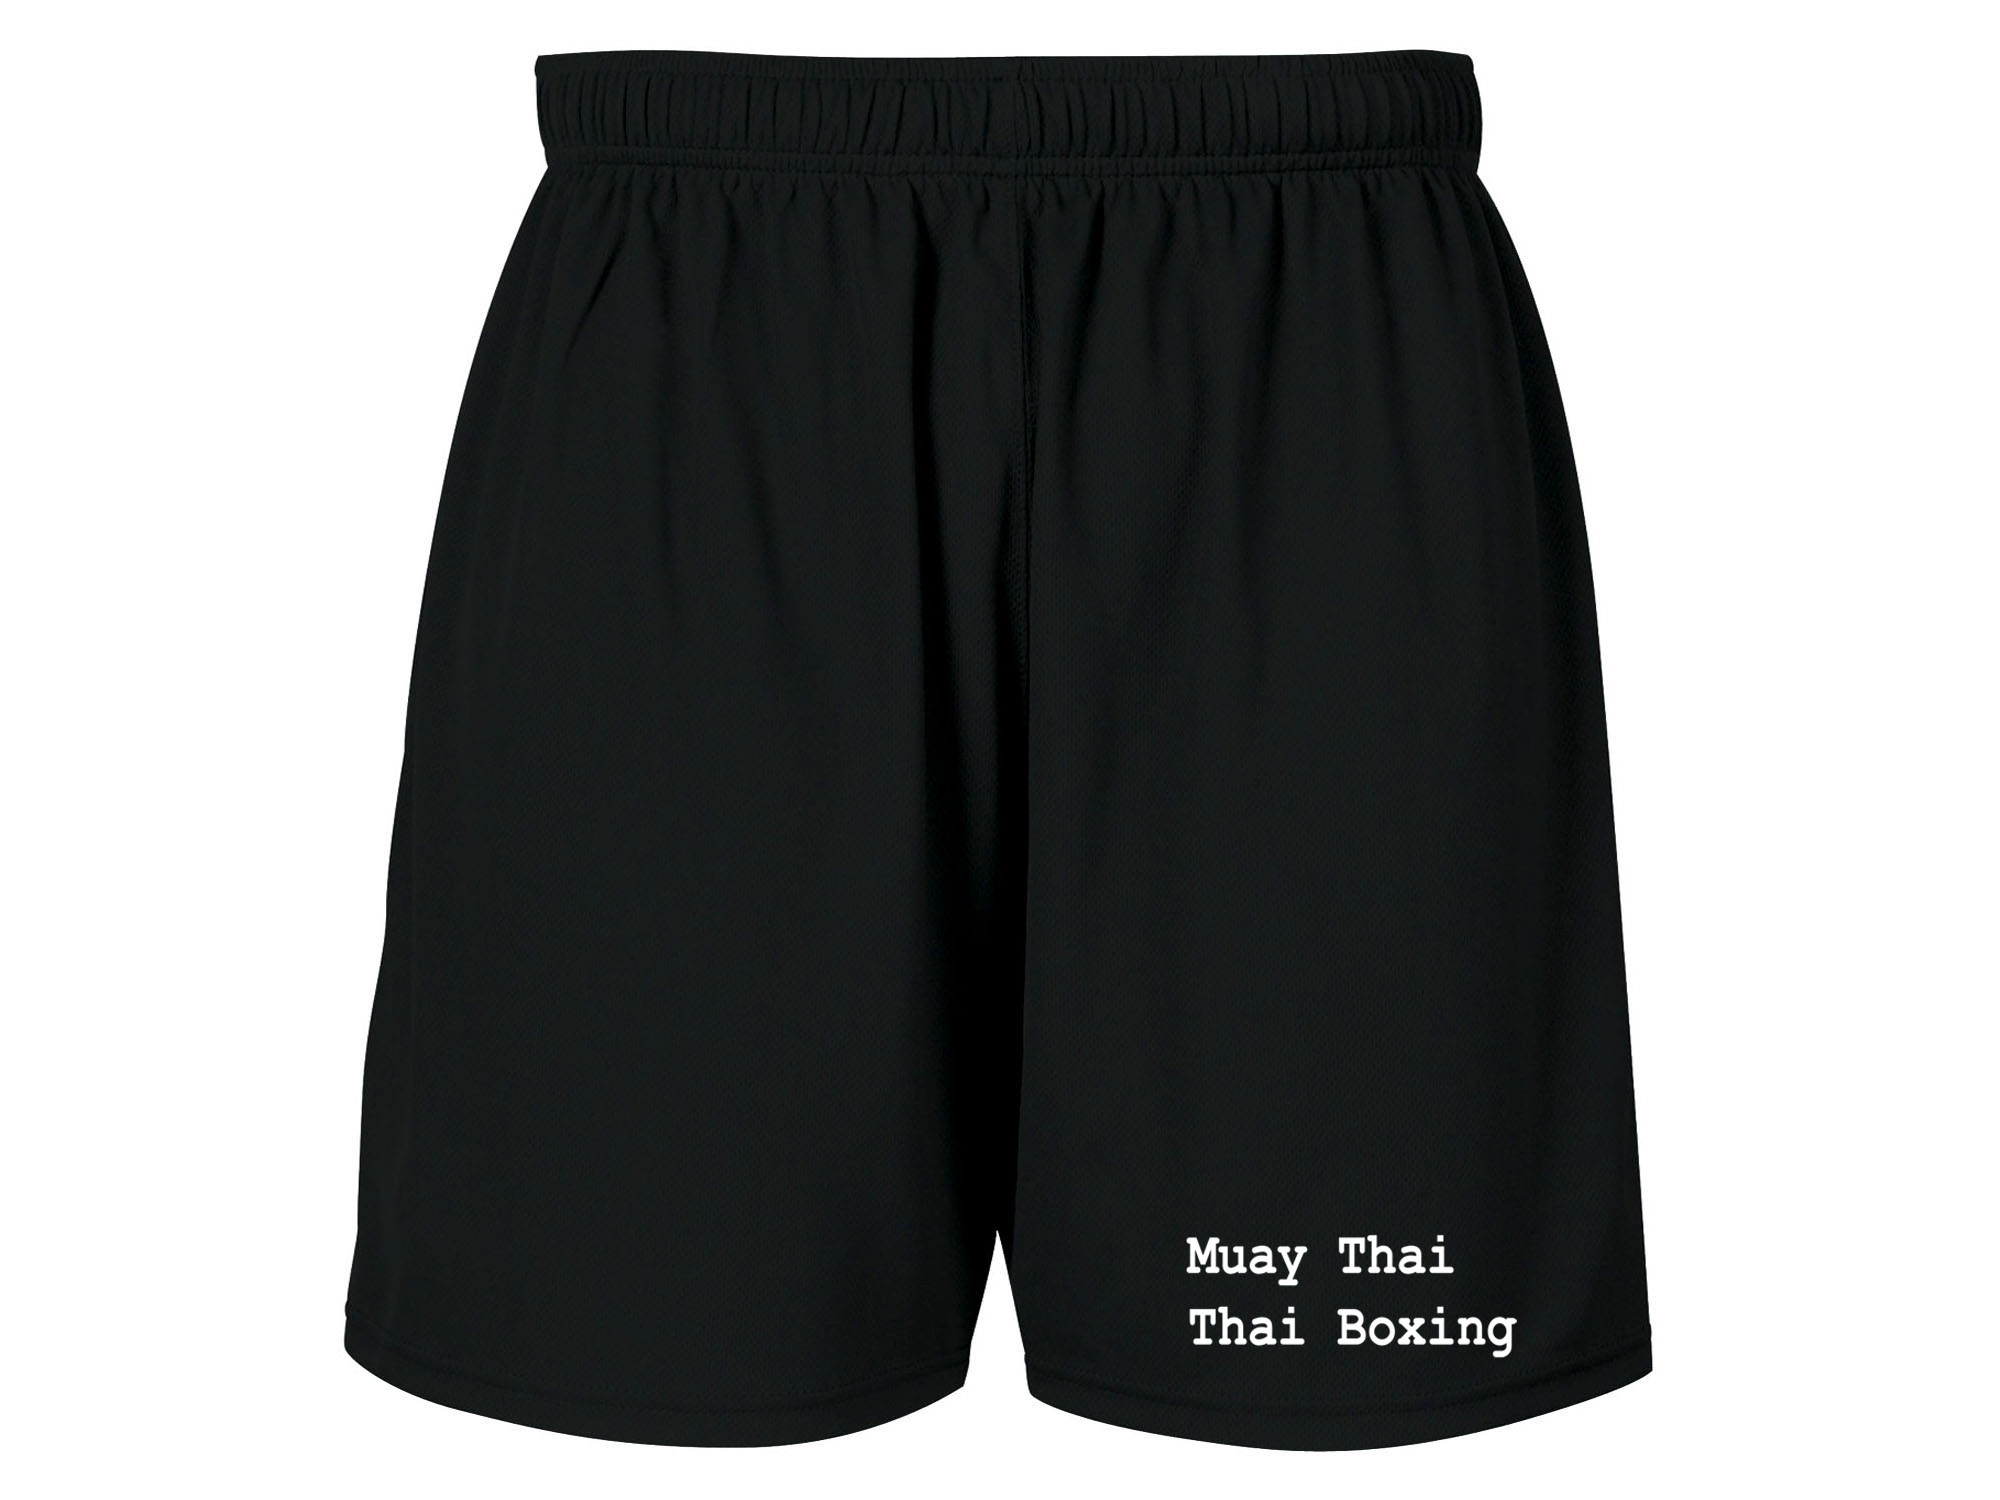 Muay Thai boxing sweat proof fabric workout shorts